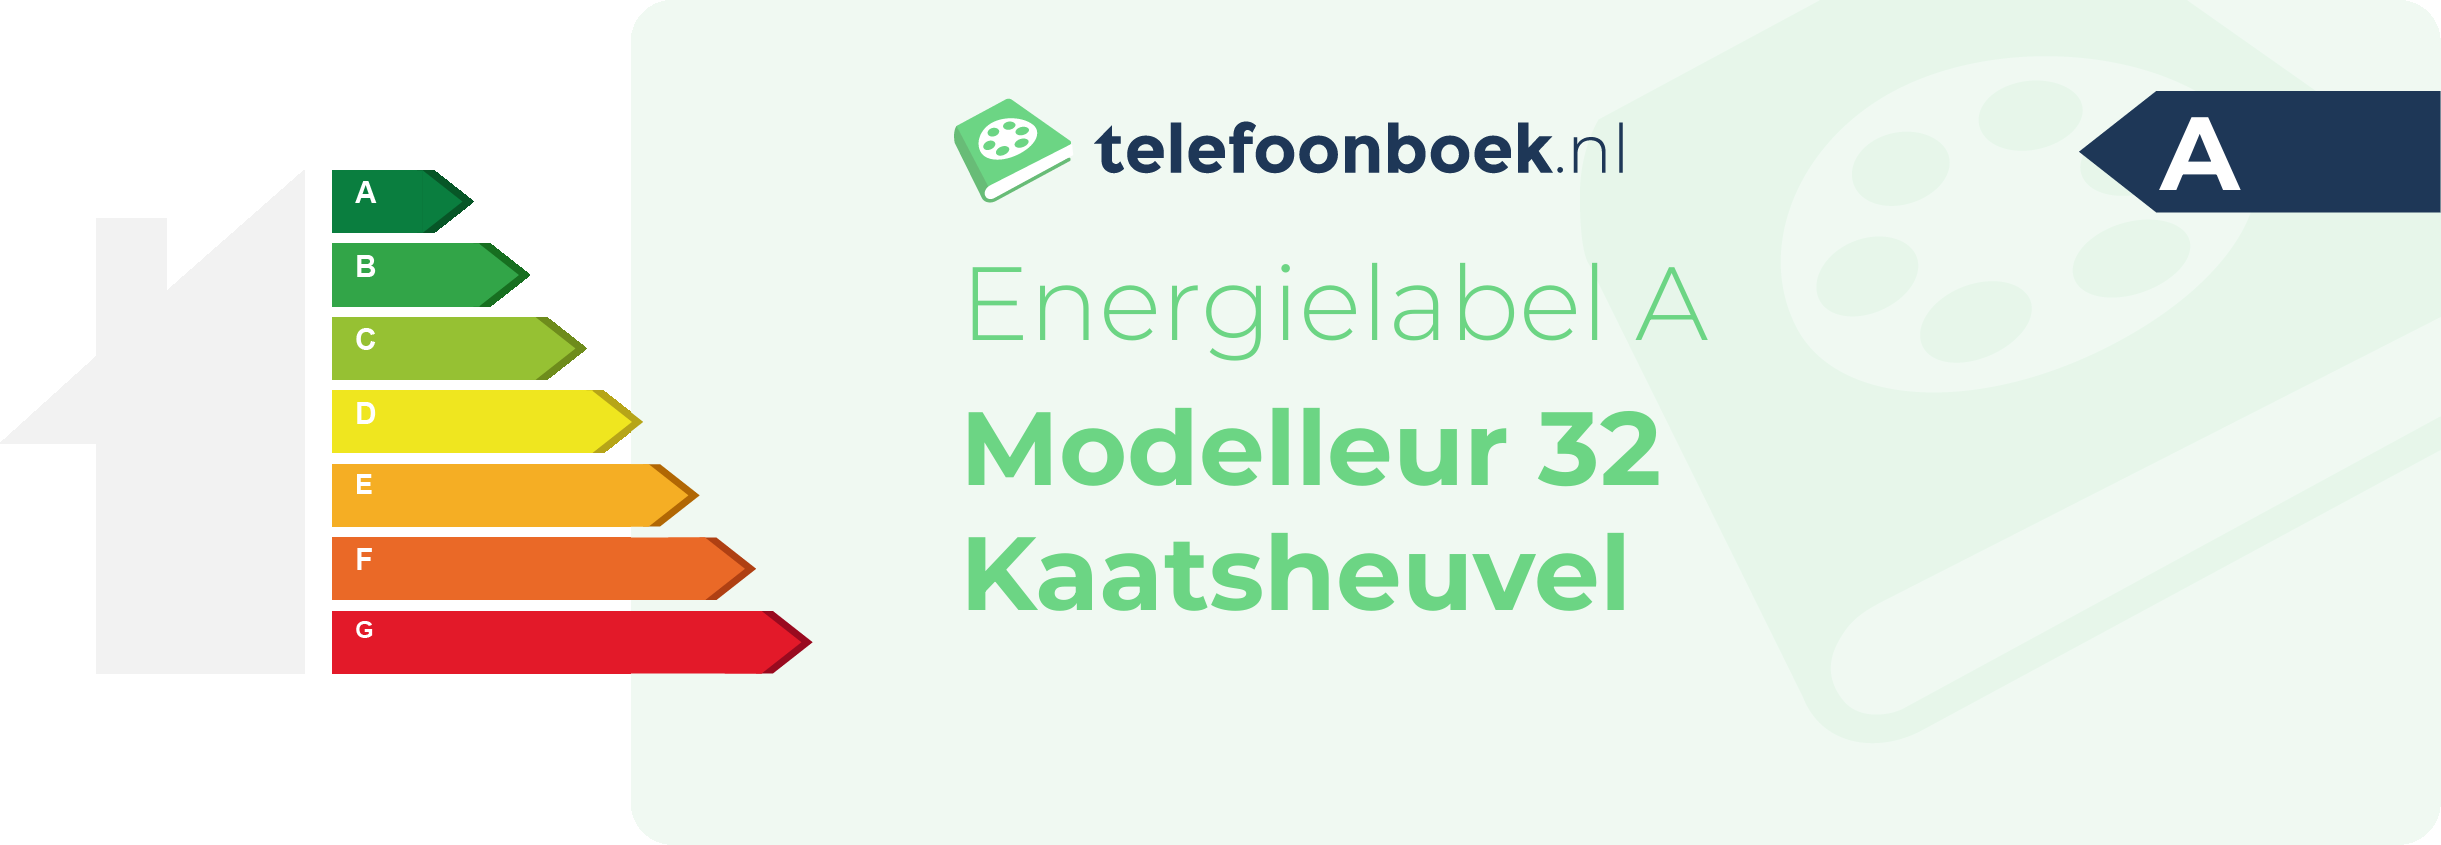 Energielabel Modelleur 32 Kaatsheuvel